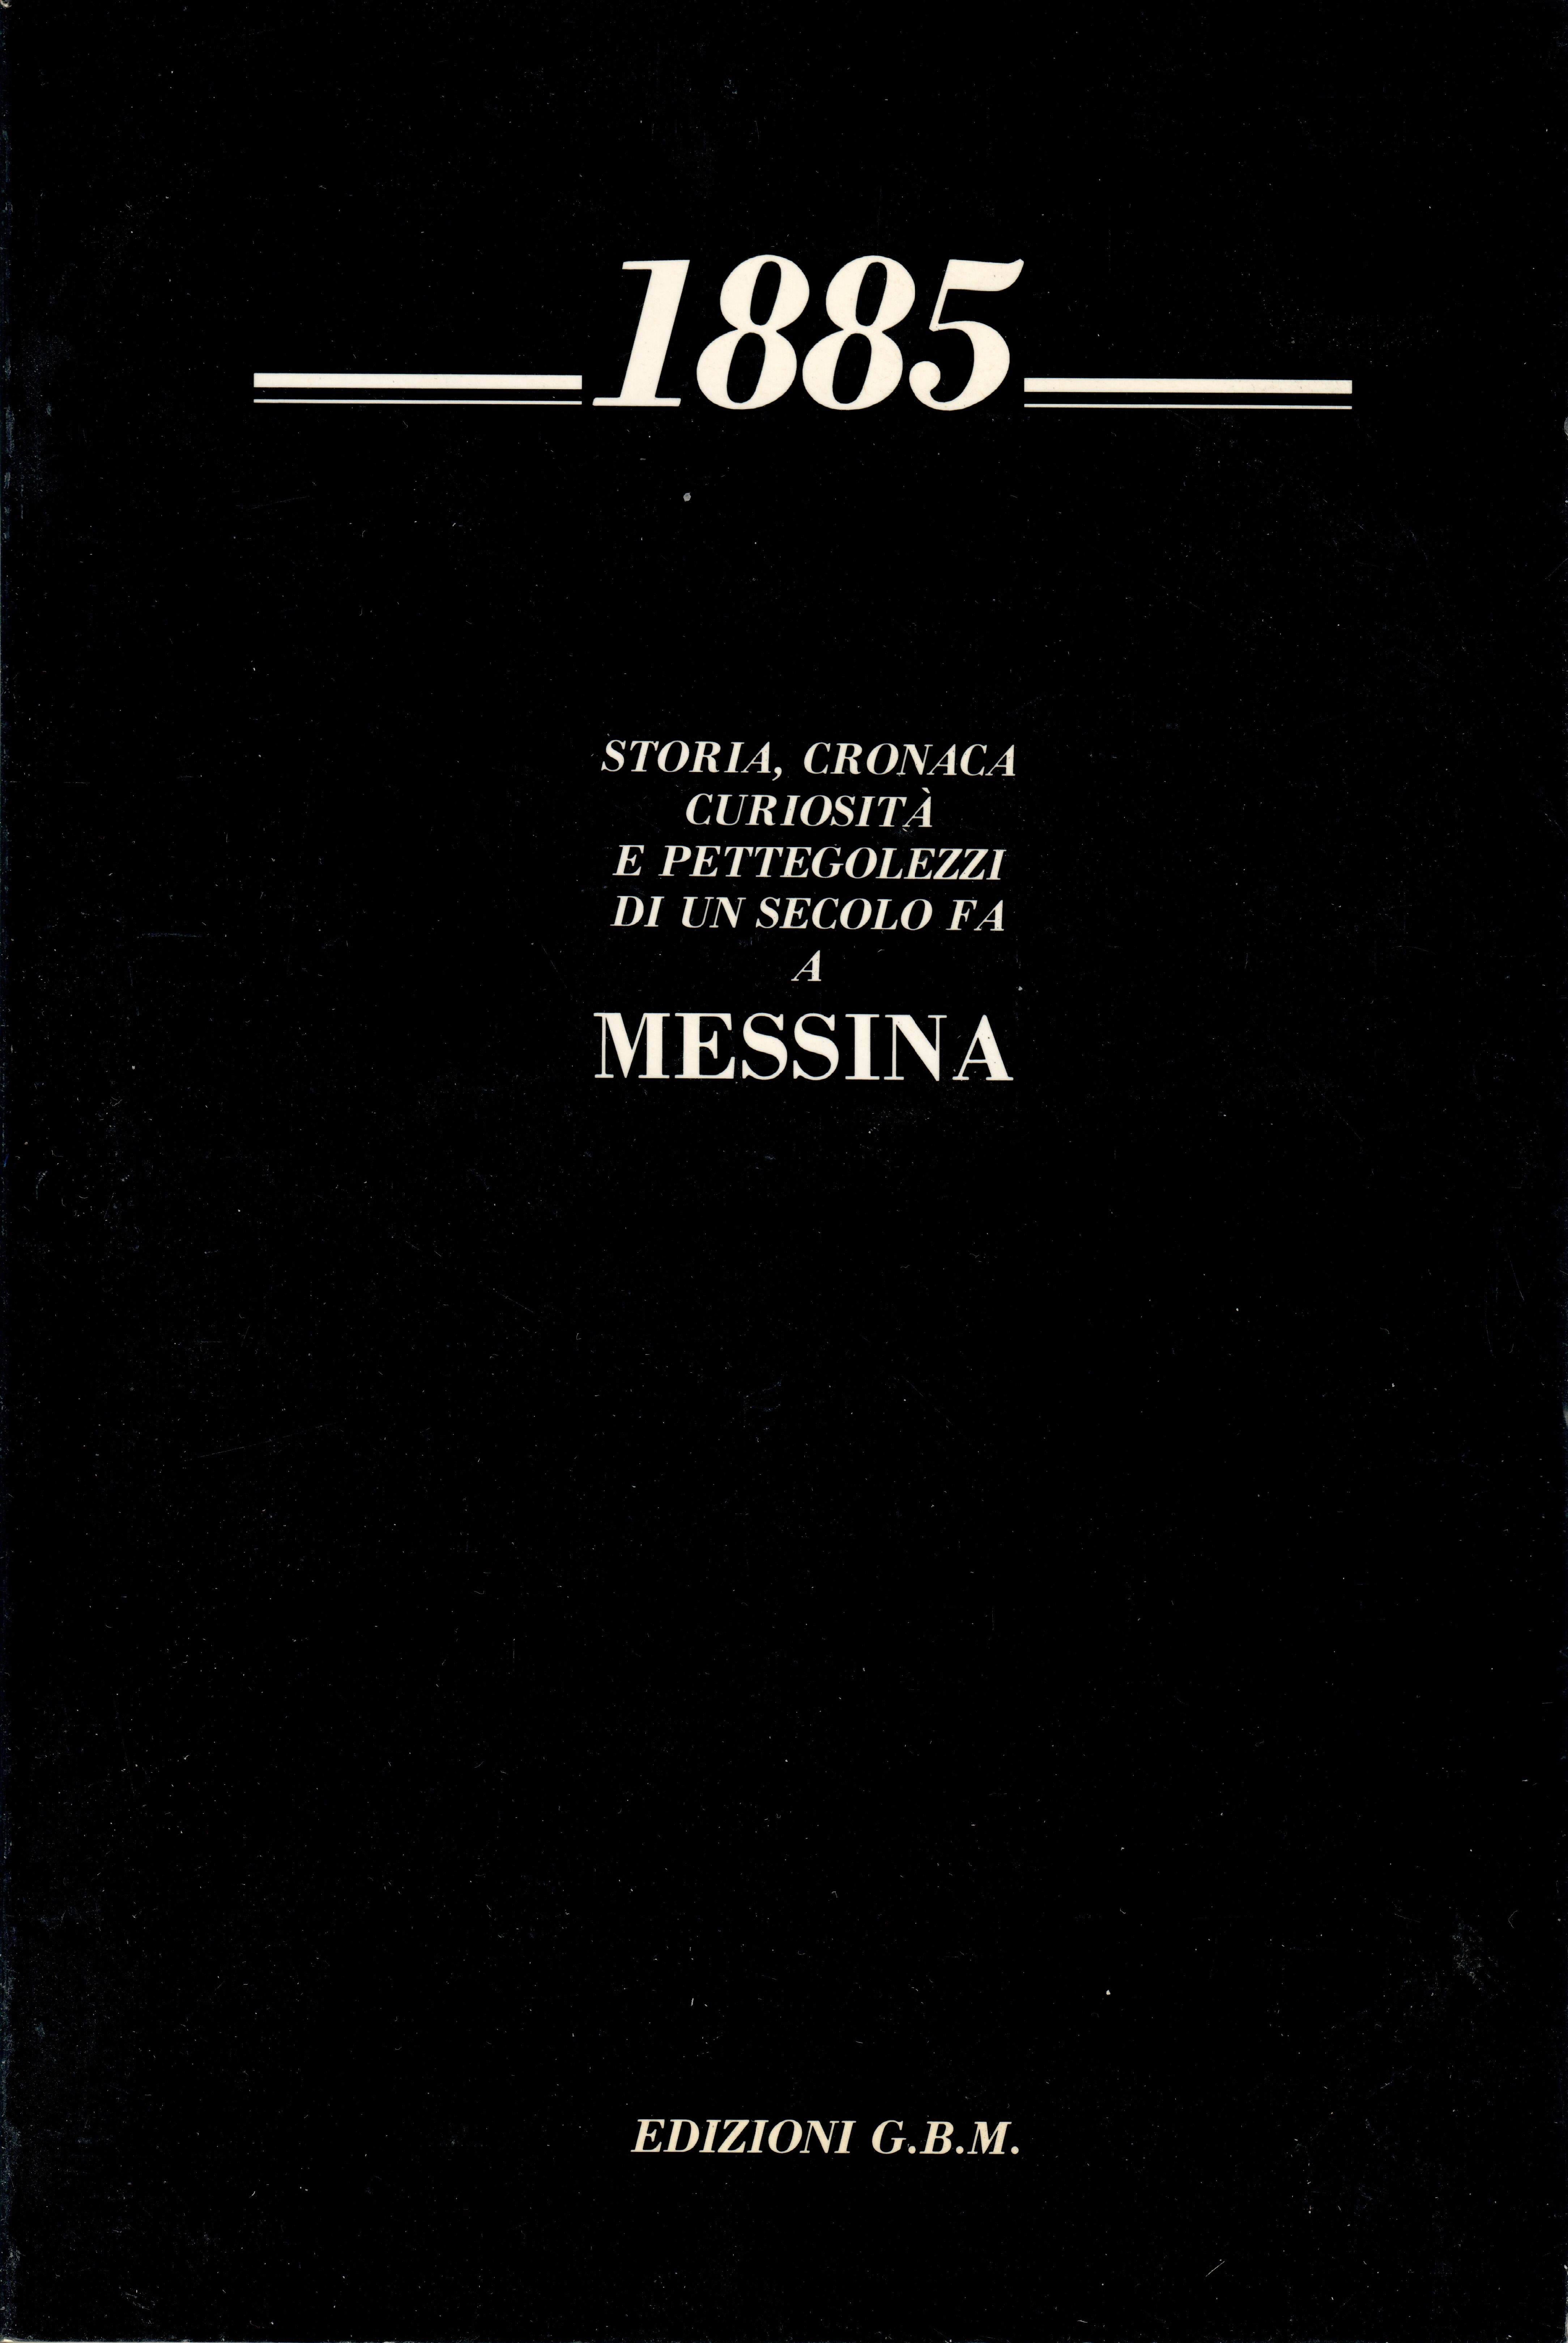 Doveva far parte di un progetto ambizioso che prevedeva la pubblicazione di una serie di annali della storia di Messina fino al 1908. Ma per una serie di sfortunati eventi il progetto non venne mai portato a termine.